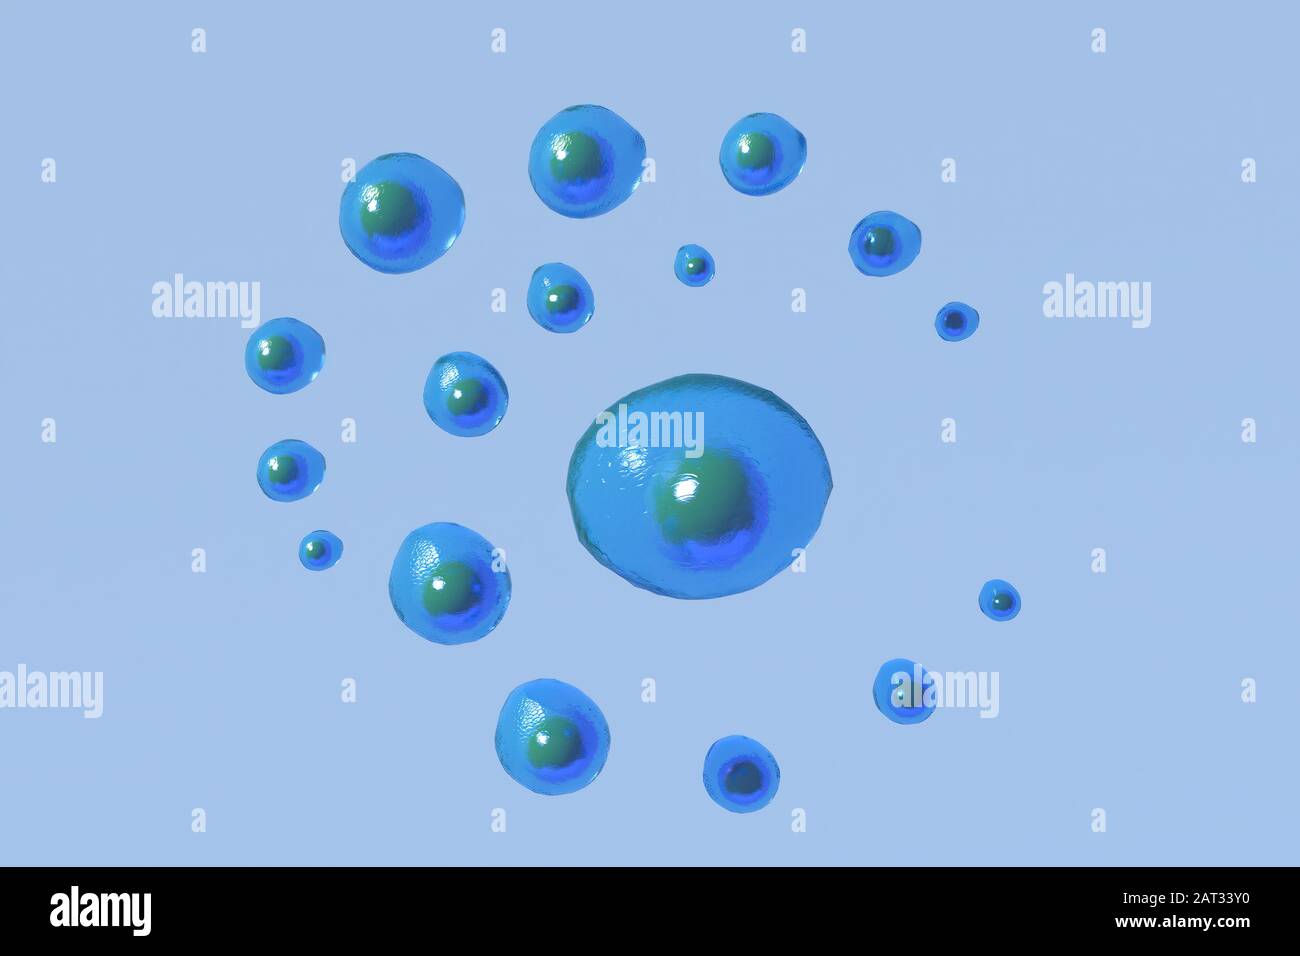 La representación 3D de la biología celular se ocupa de la unidad de vida más pequeña. Foto de stock